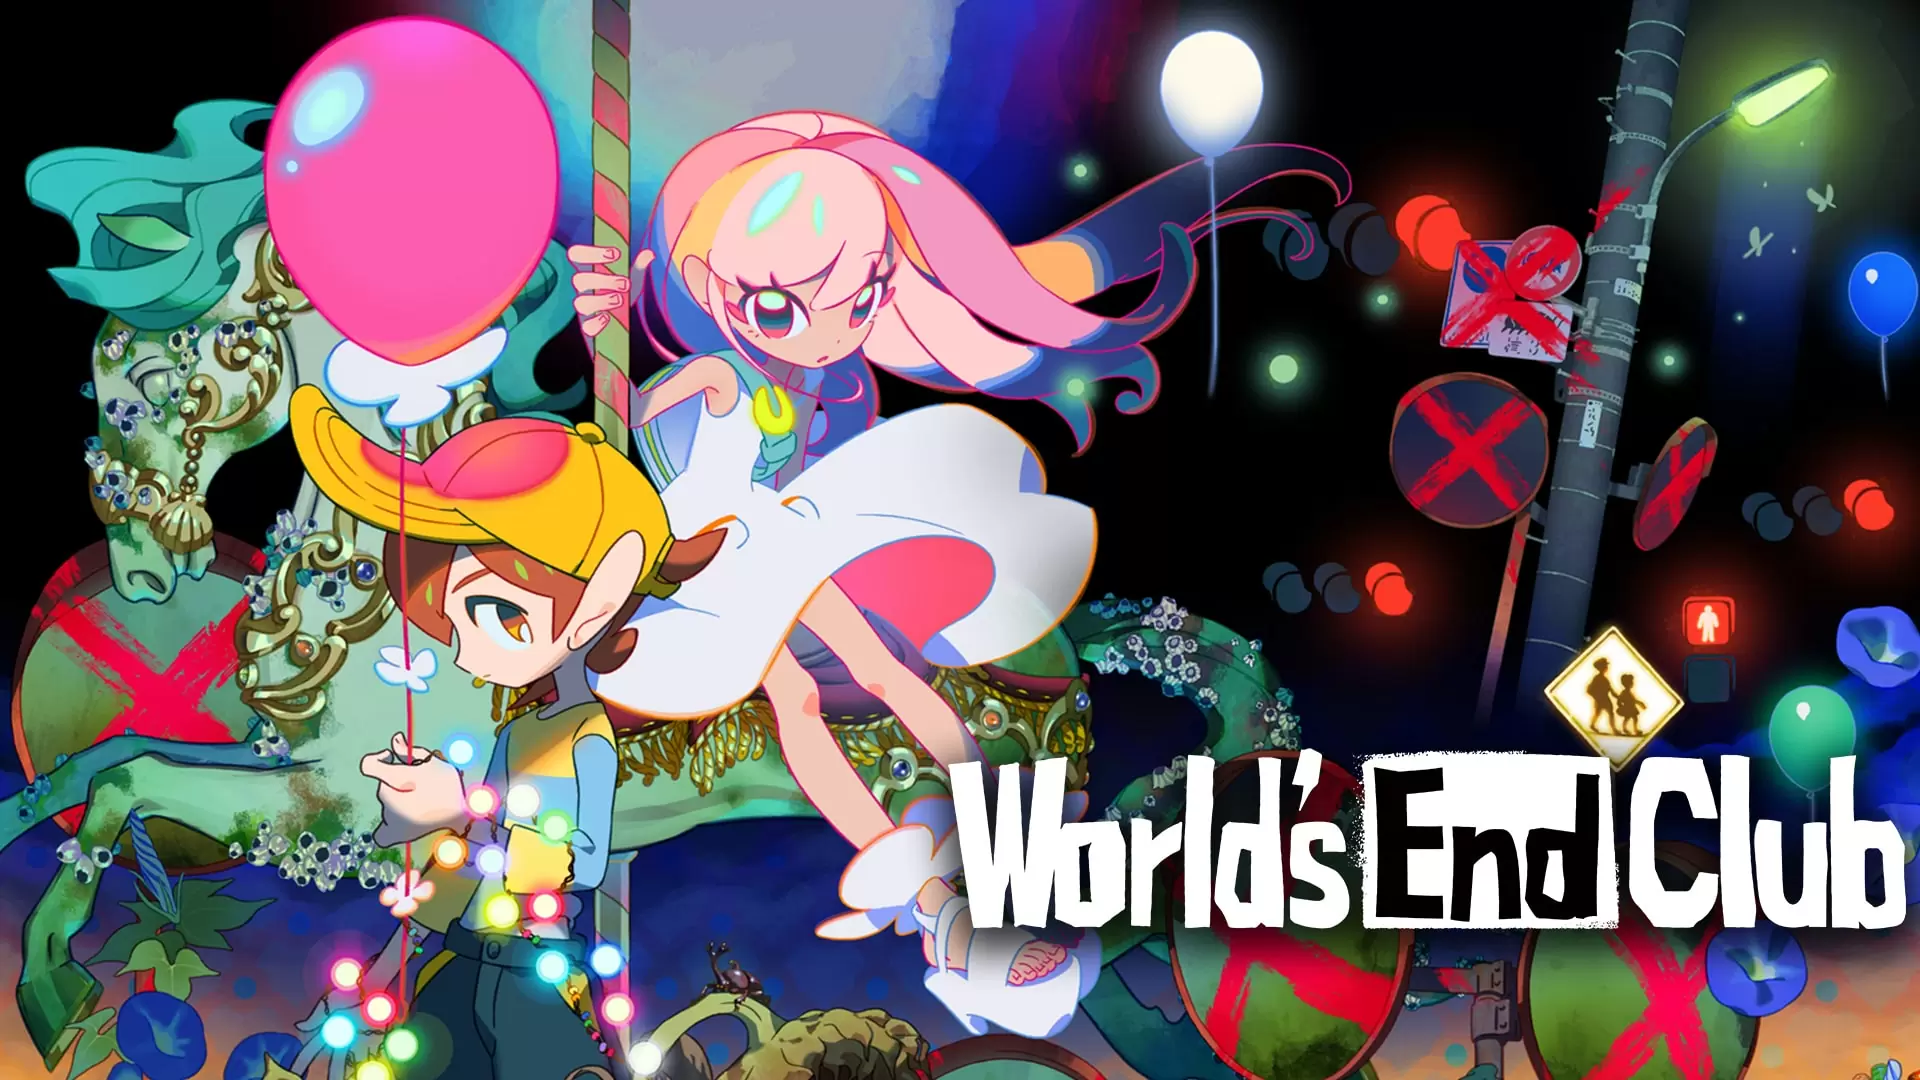 World’s End Club, la recensione: l’amicizia alla fine del mondo